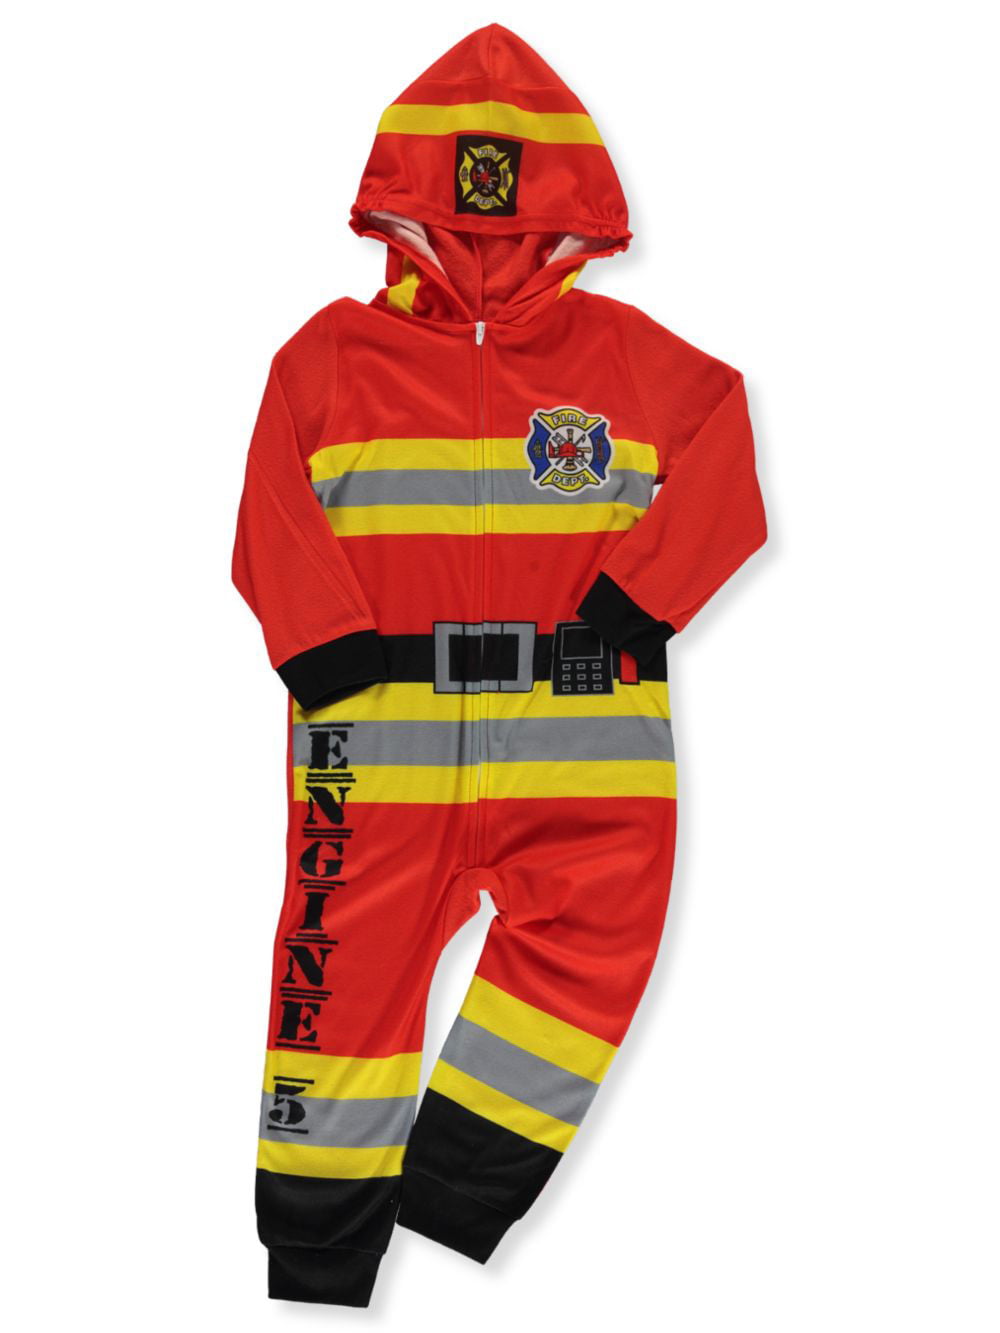 NWT Boys 4-12 Yellow Red Fireman Firefighter Pajamas Pajama Set Costume 